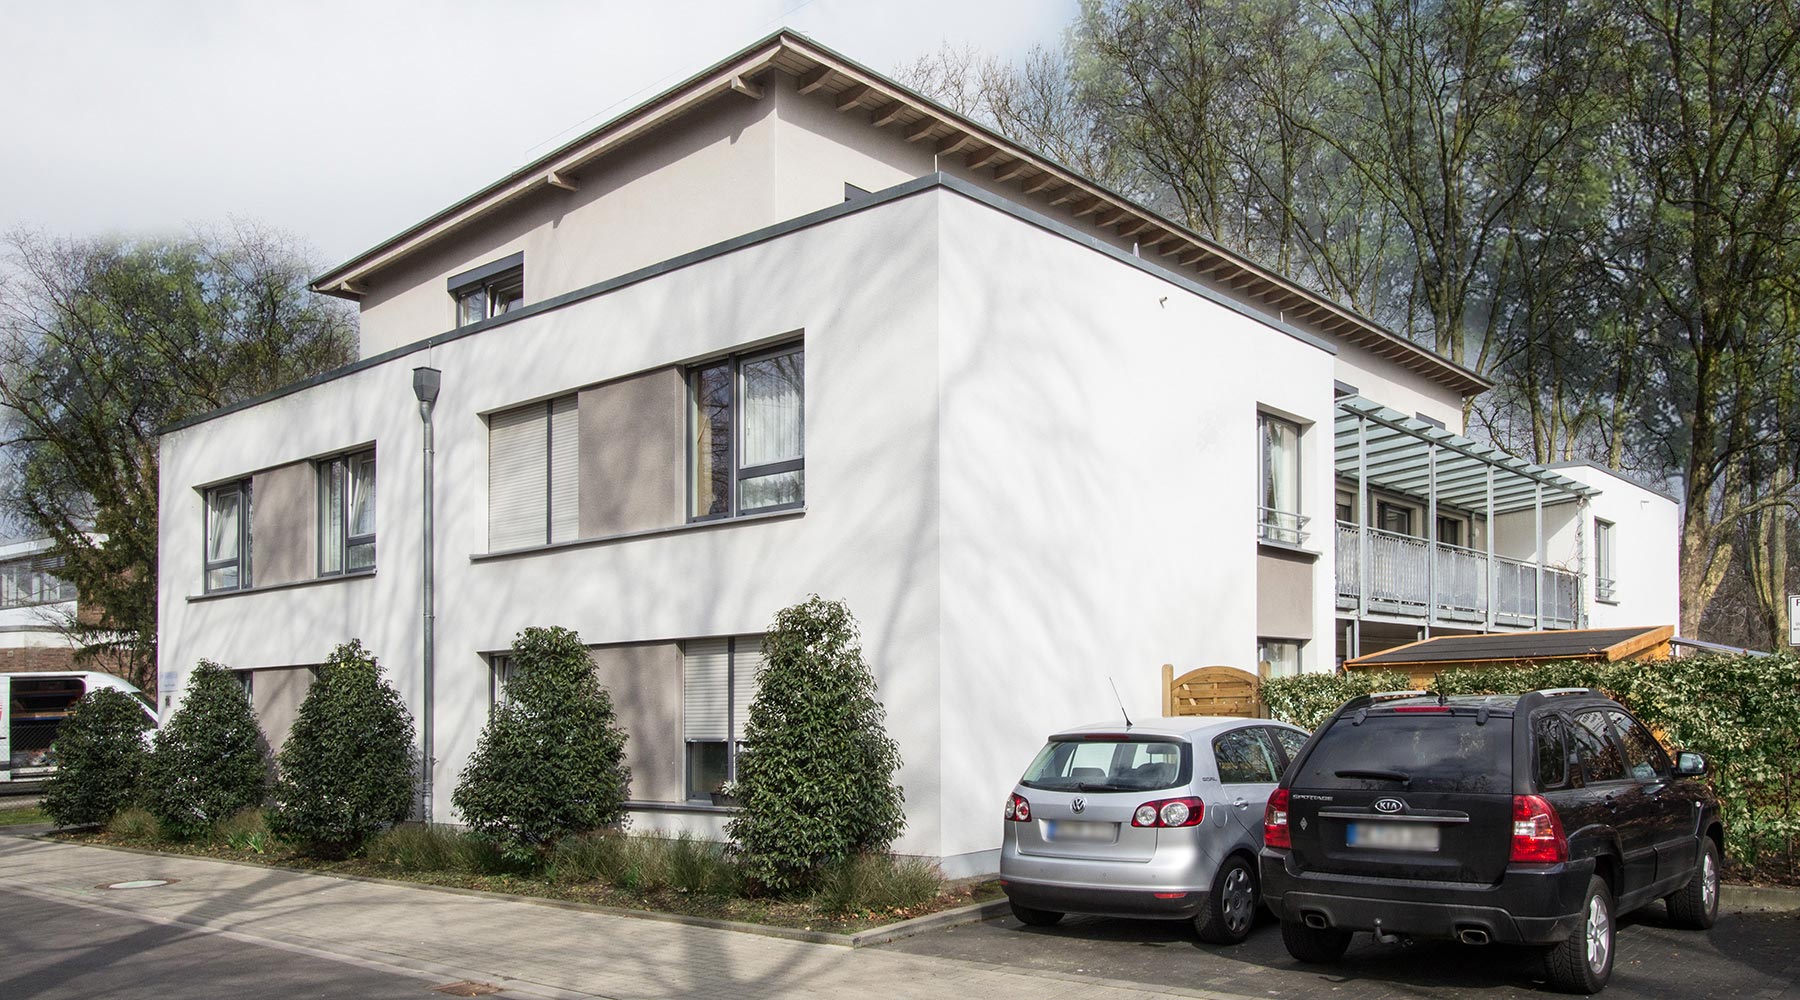 Haus Robert in Grevenbroich. Weiße Fassade mit grauen Akzenten zwischen den Fenstern.